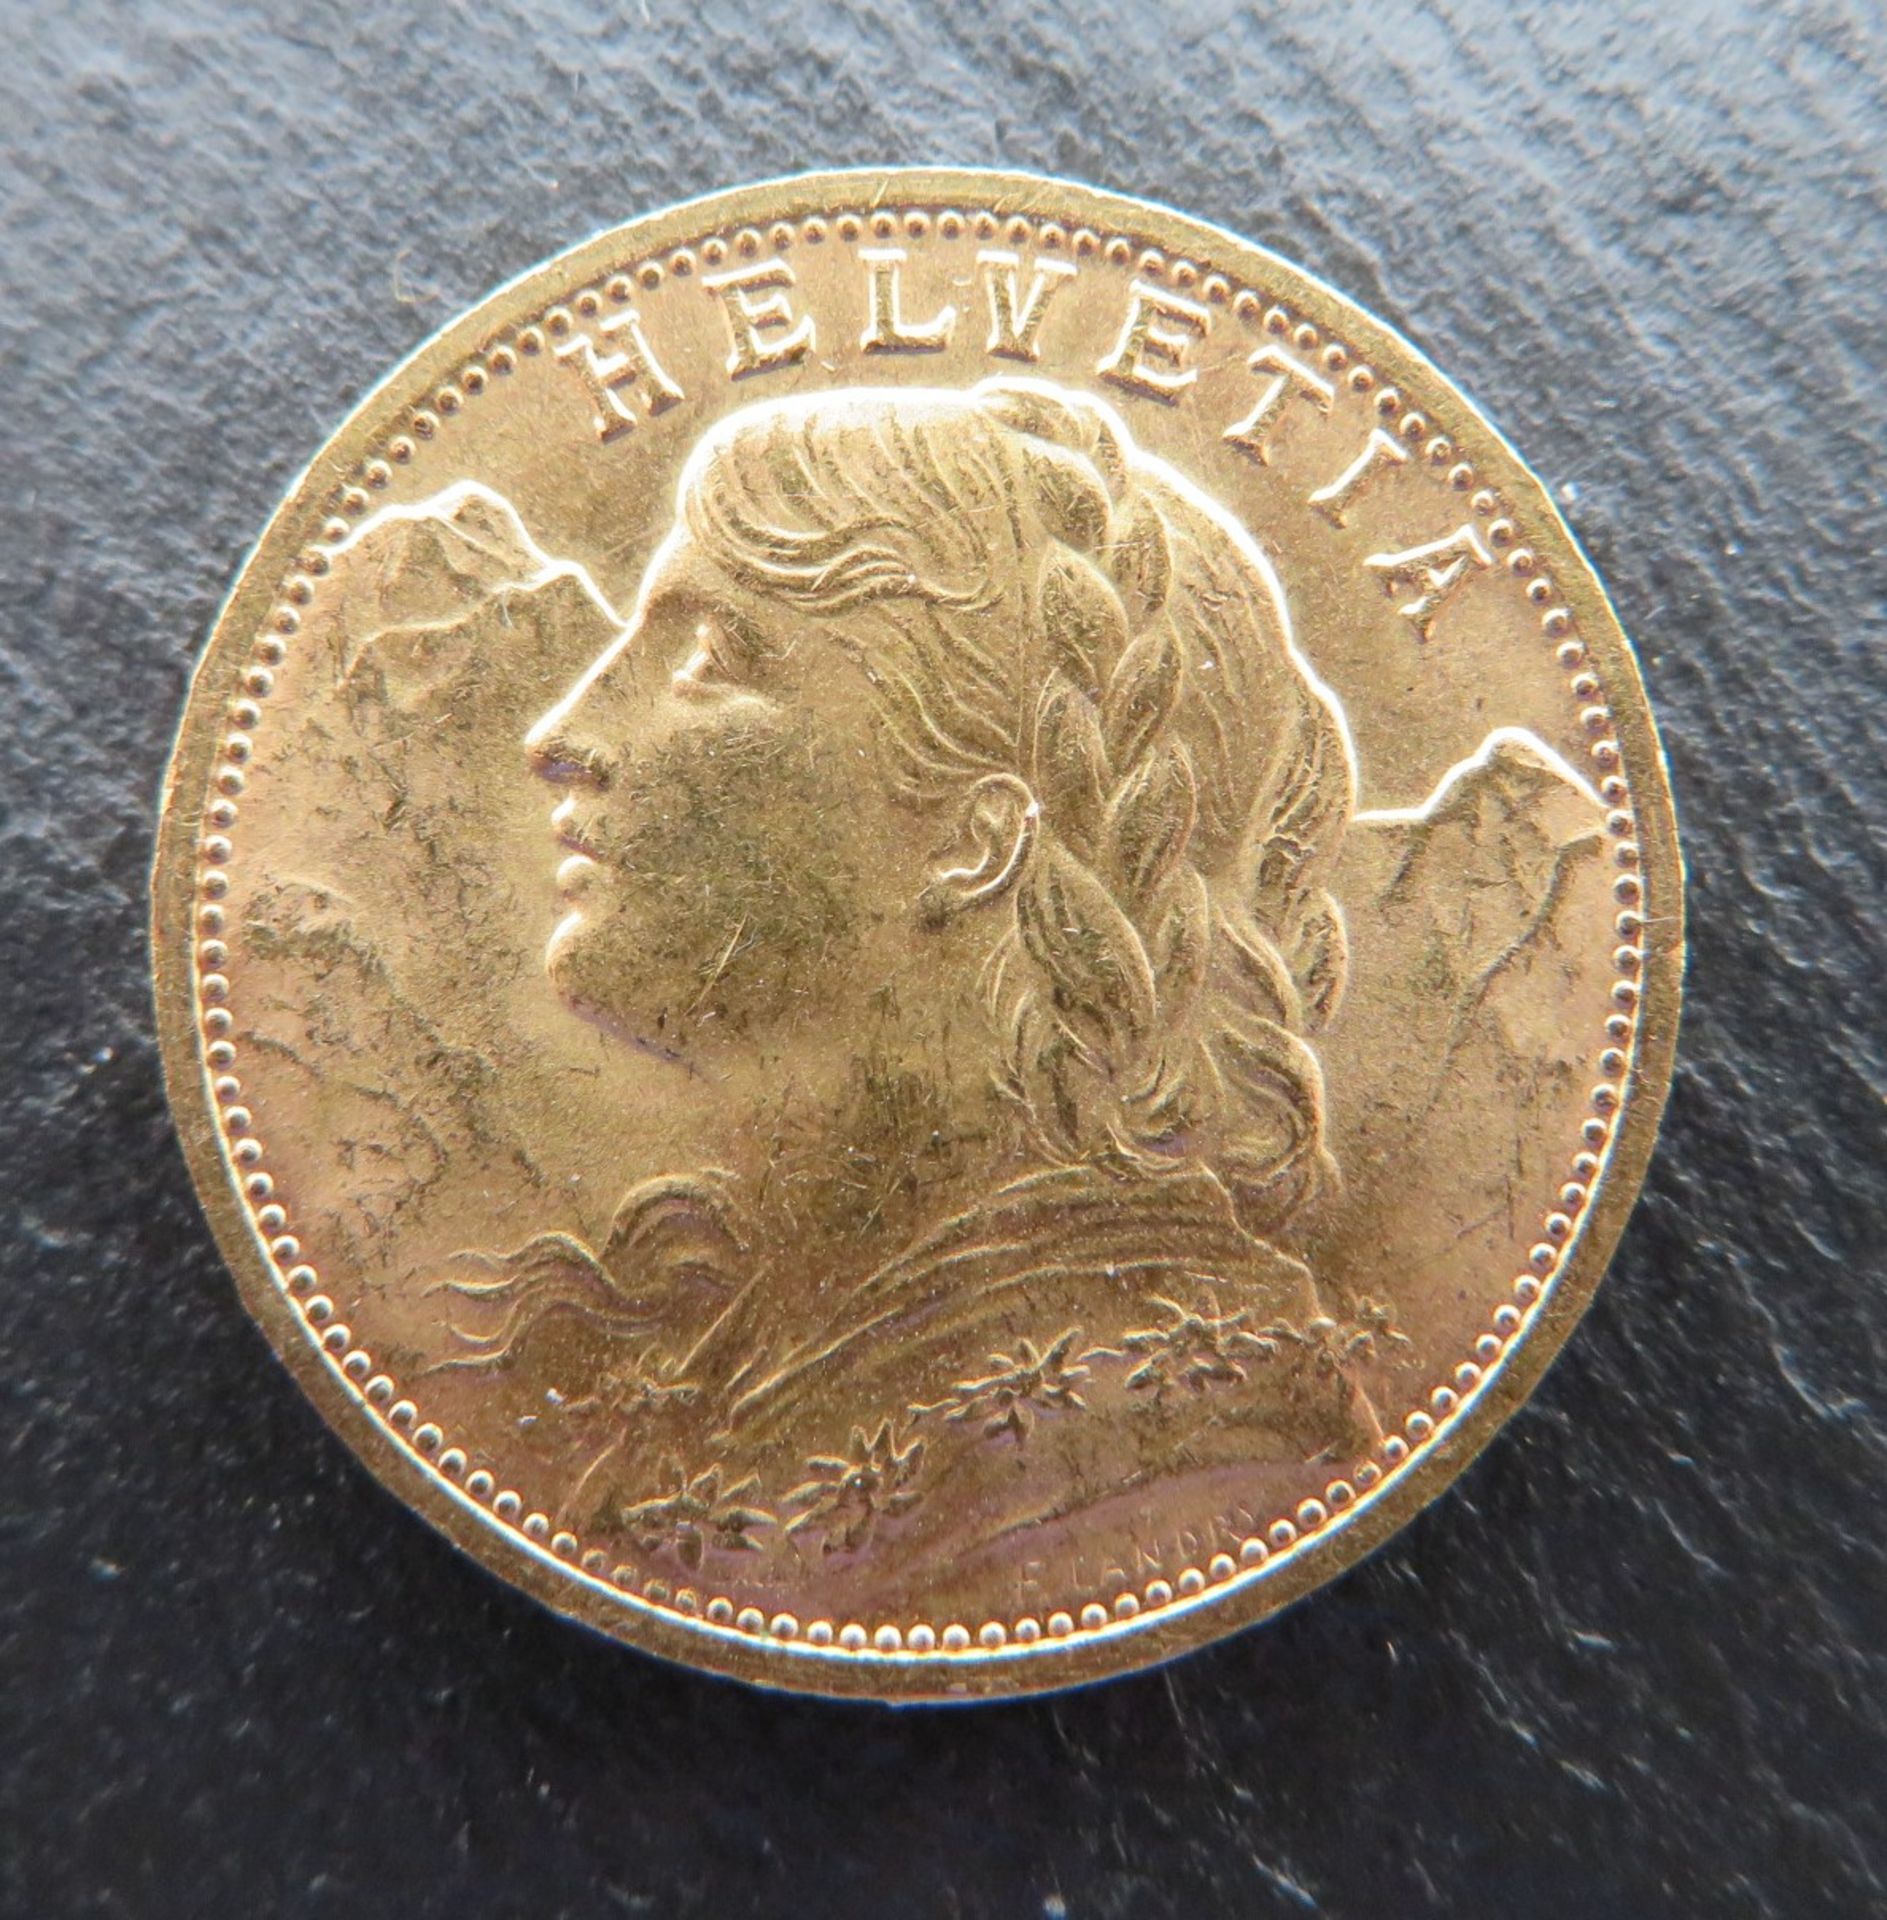 Goldmünzen, Schweiz, Vreneli, 20 Franken, 1935B, Gold 900/000, 6,45 g, d 2,1 cm. - Image 2 of 2